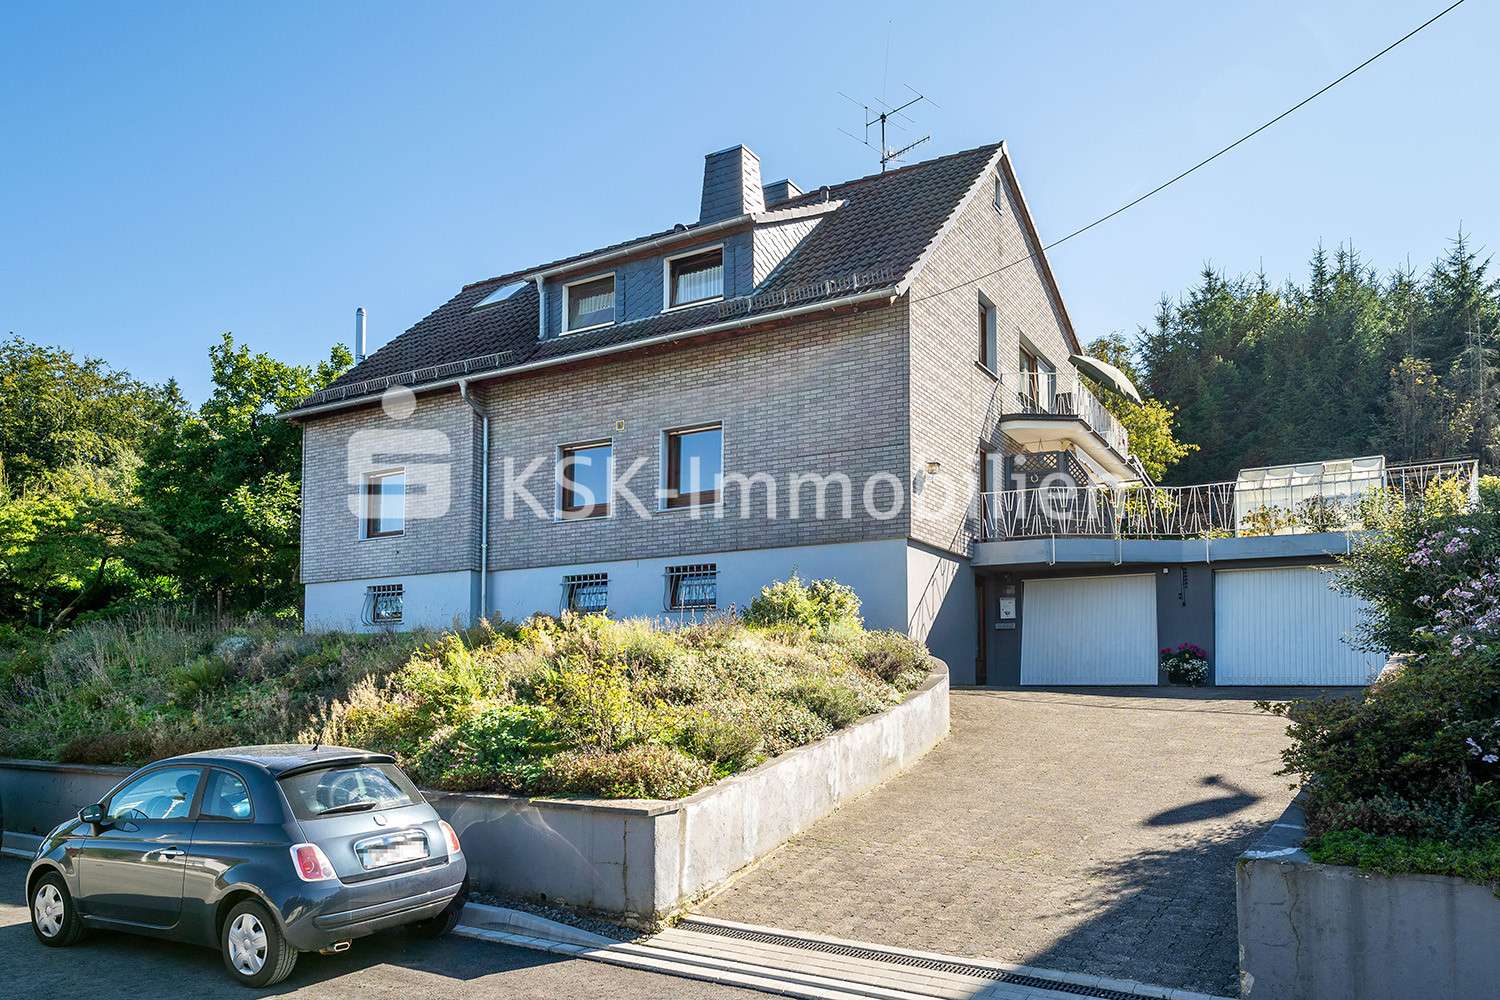 117301 Frontansicht - Einfamilienhaus in 51688 Wipperfürth mit 190m² kaufen